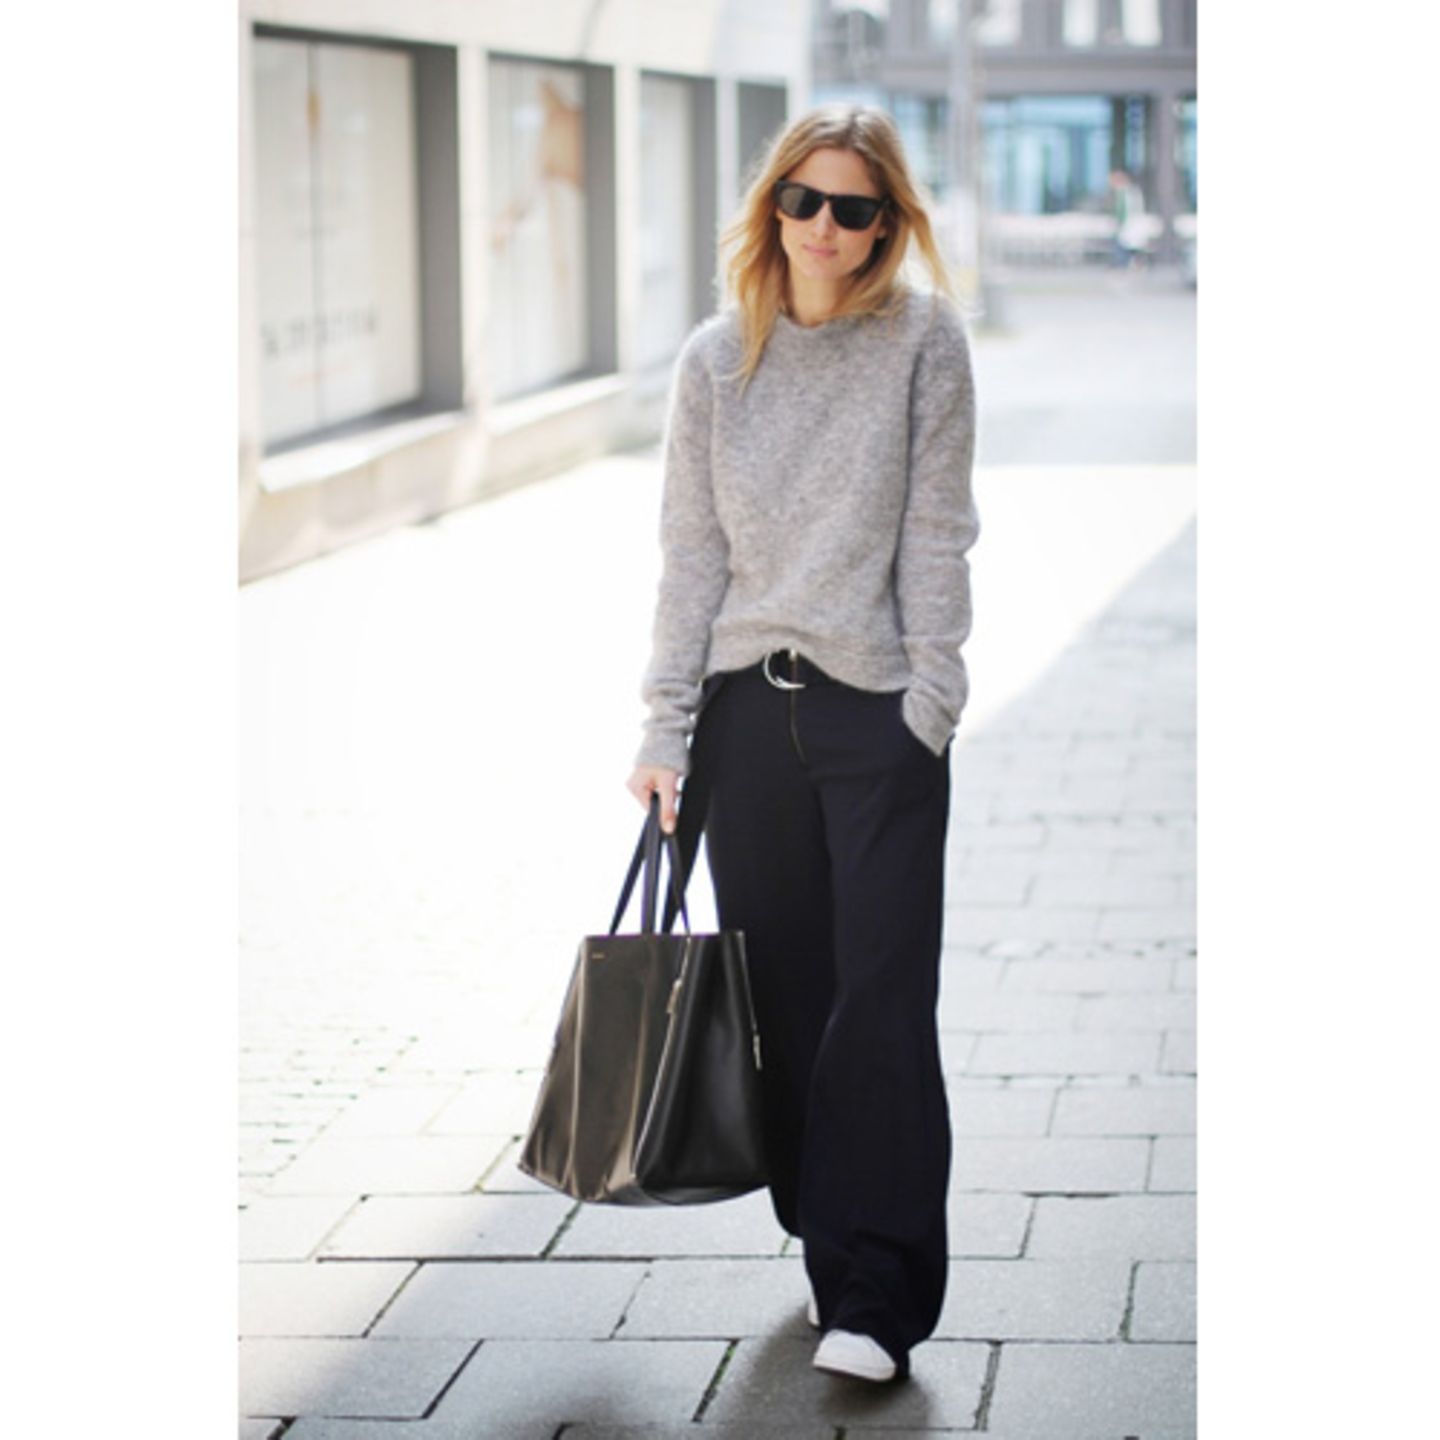 Bloggerin Mija beweist, wie gut sich der weiße Sneaker zu sportlich-eleganten Outfits macht.